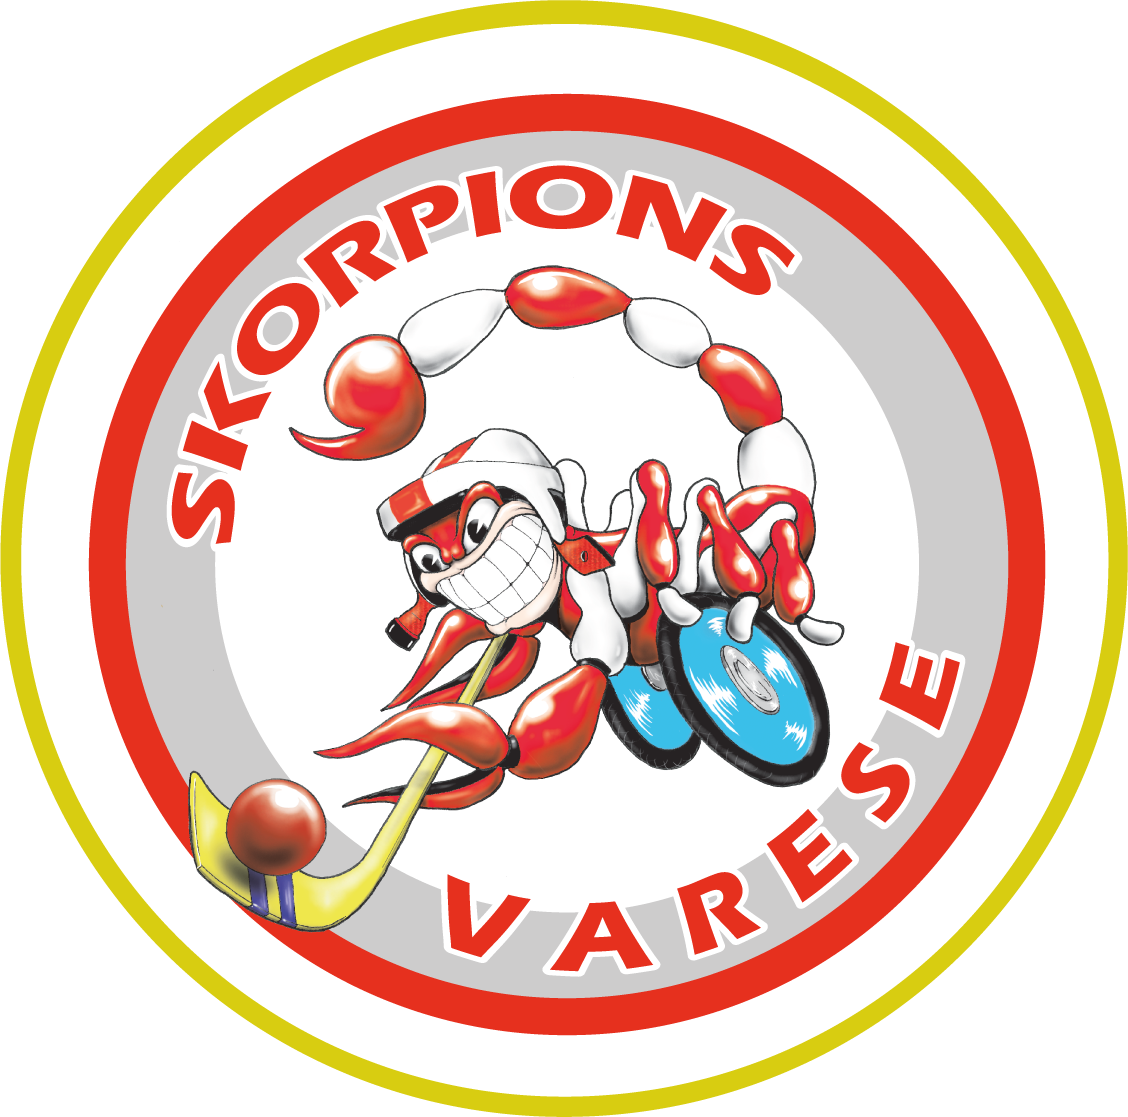 Skorpions VA IT